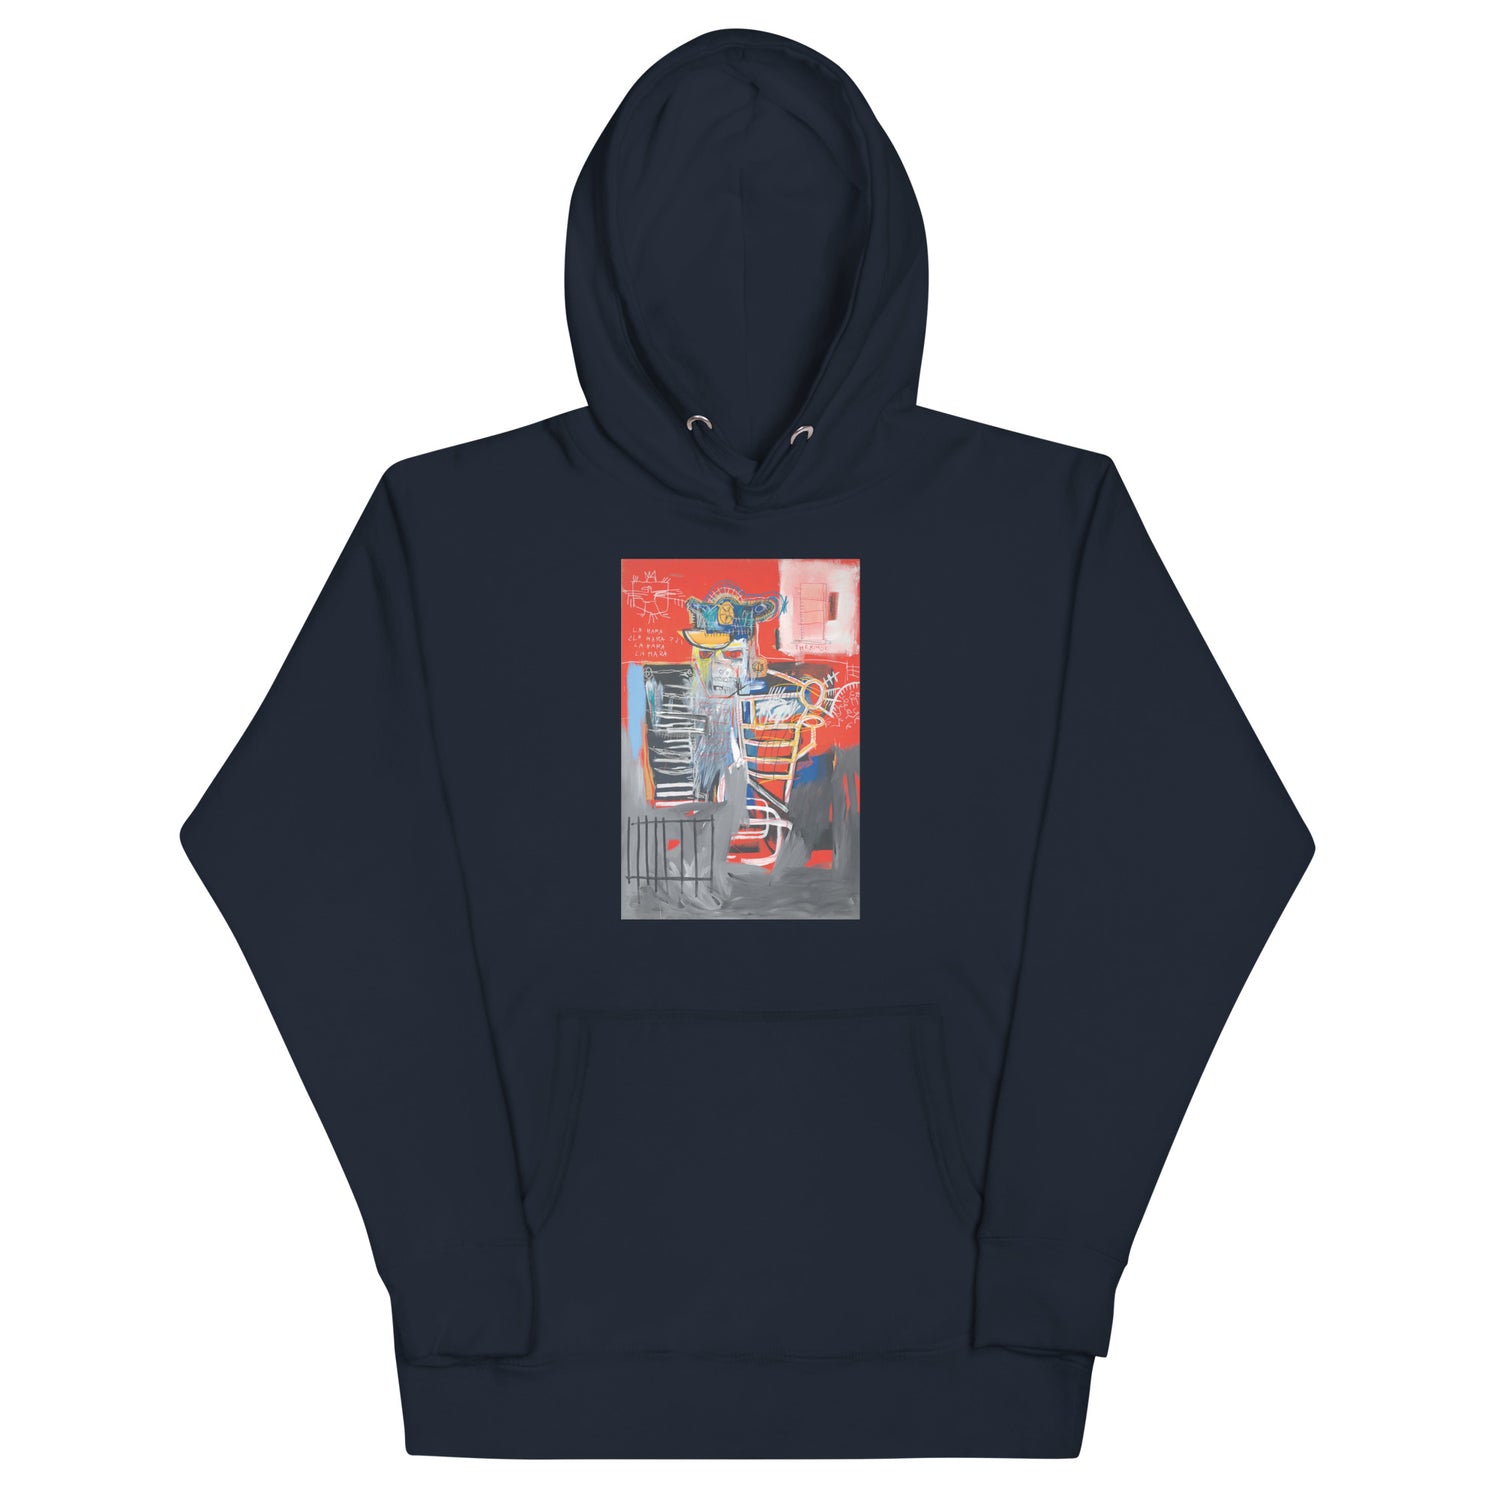 Jean-Michel Basquiat "La Hara" Artwork Printed Premium Streetwear Sweatshirt Hoodie Navy Blue